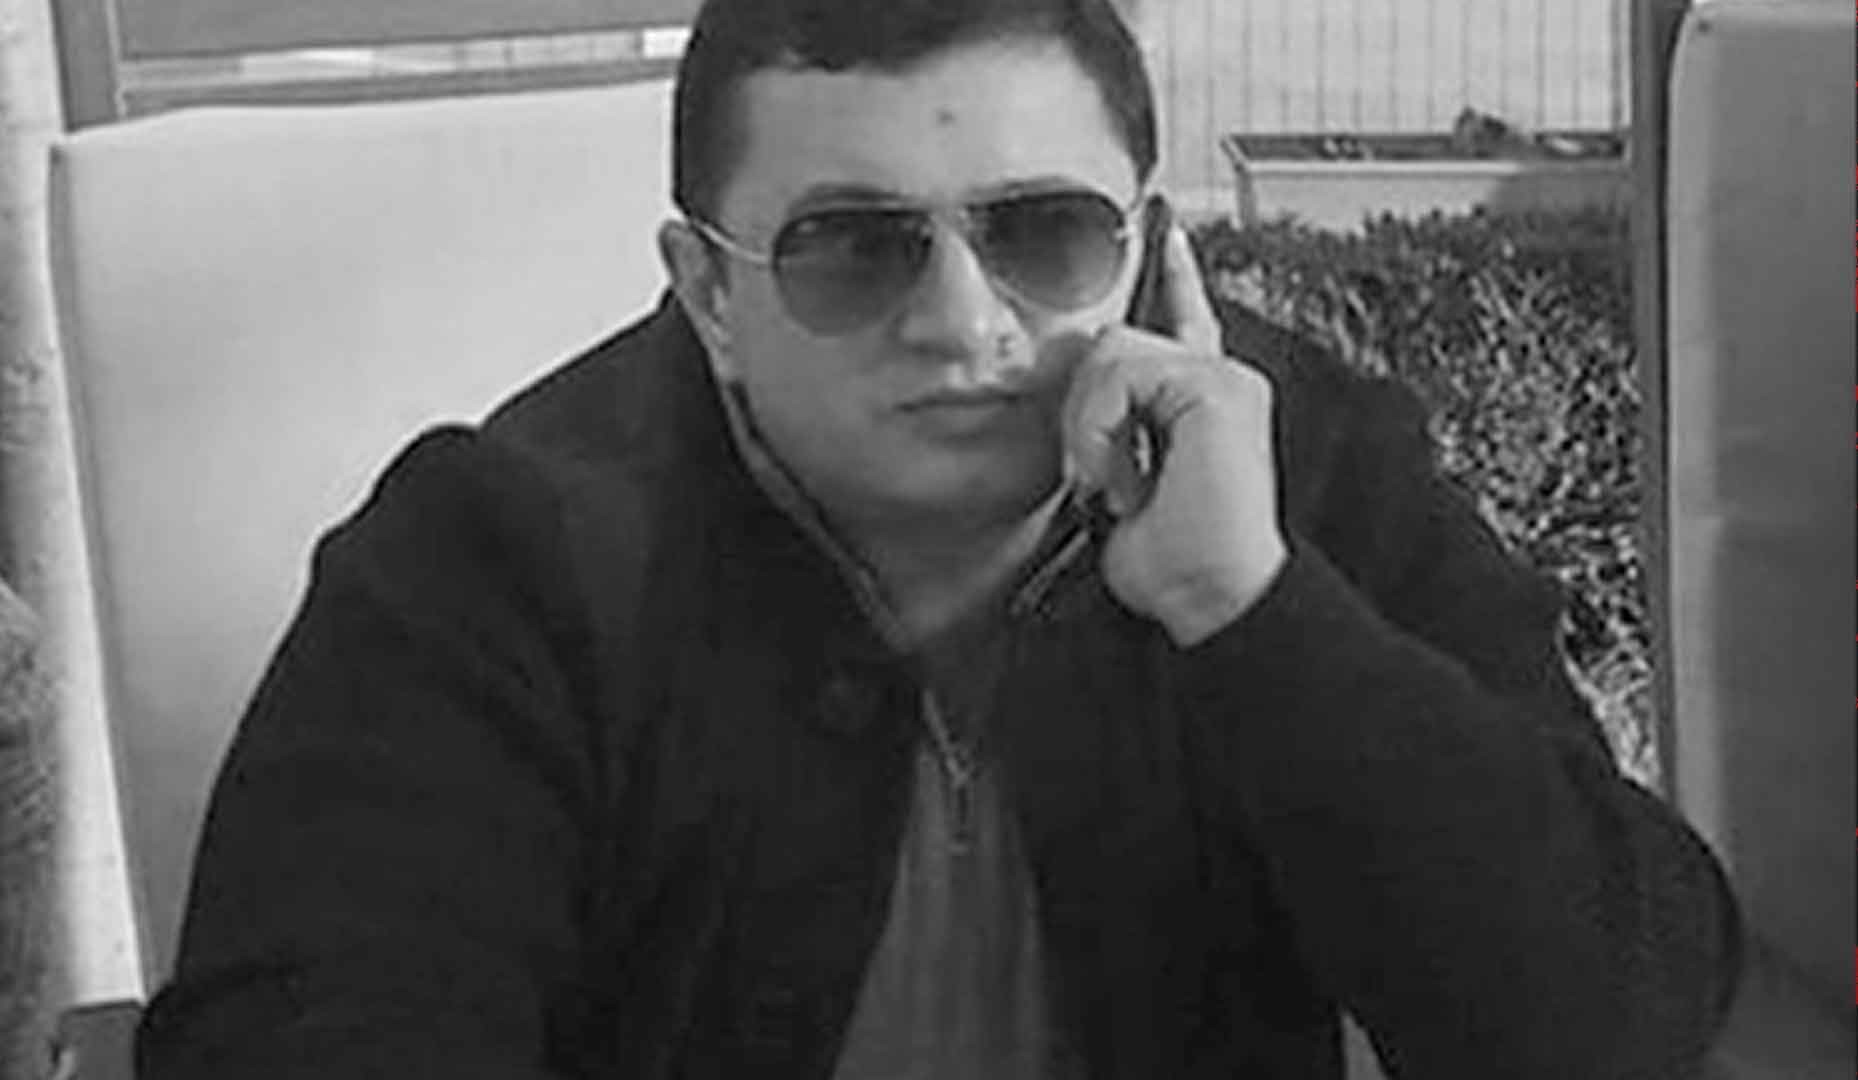 Dailystorm - Источник рассказал о заказе на убийство азербайджанского вора в законе Лоту Гули